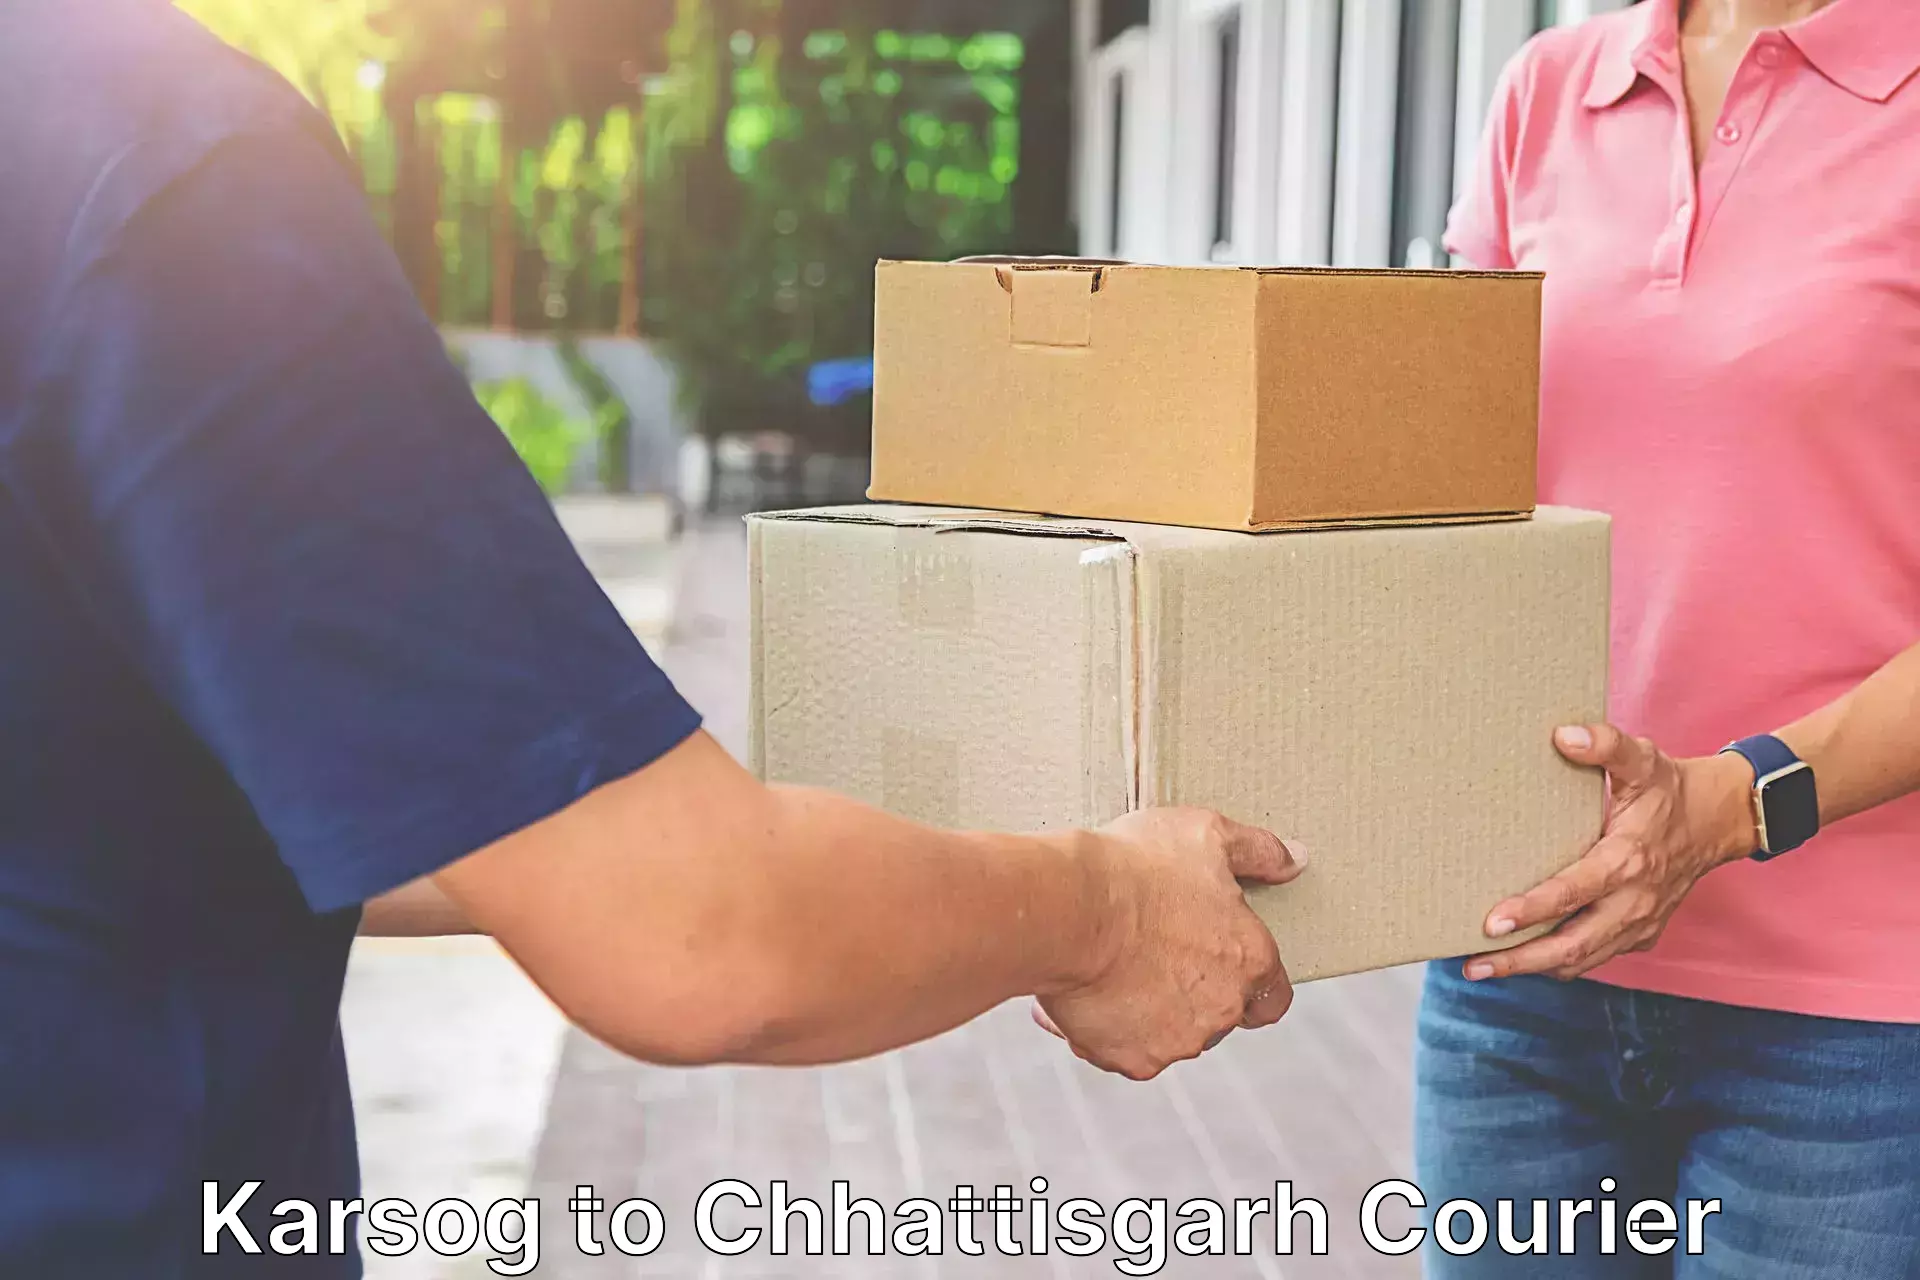 Cost-effective courier options Karsog to Ramanujganj